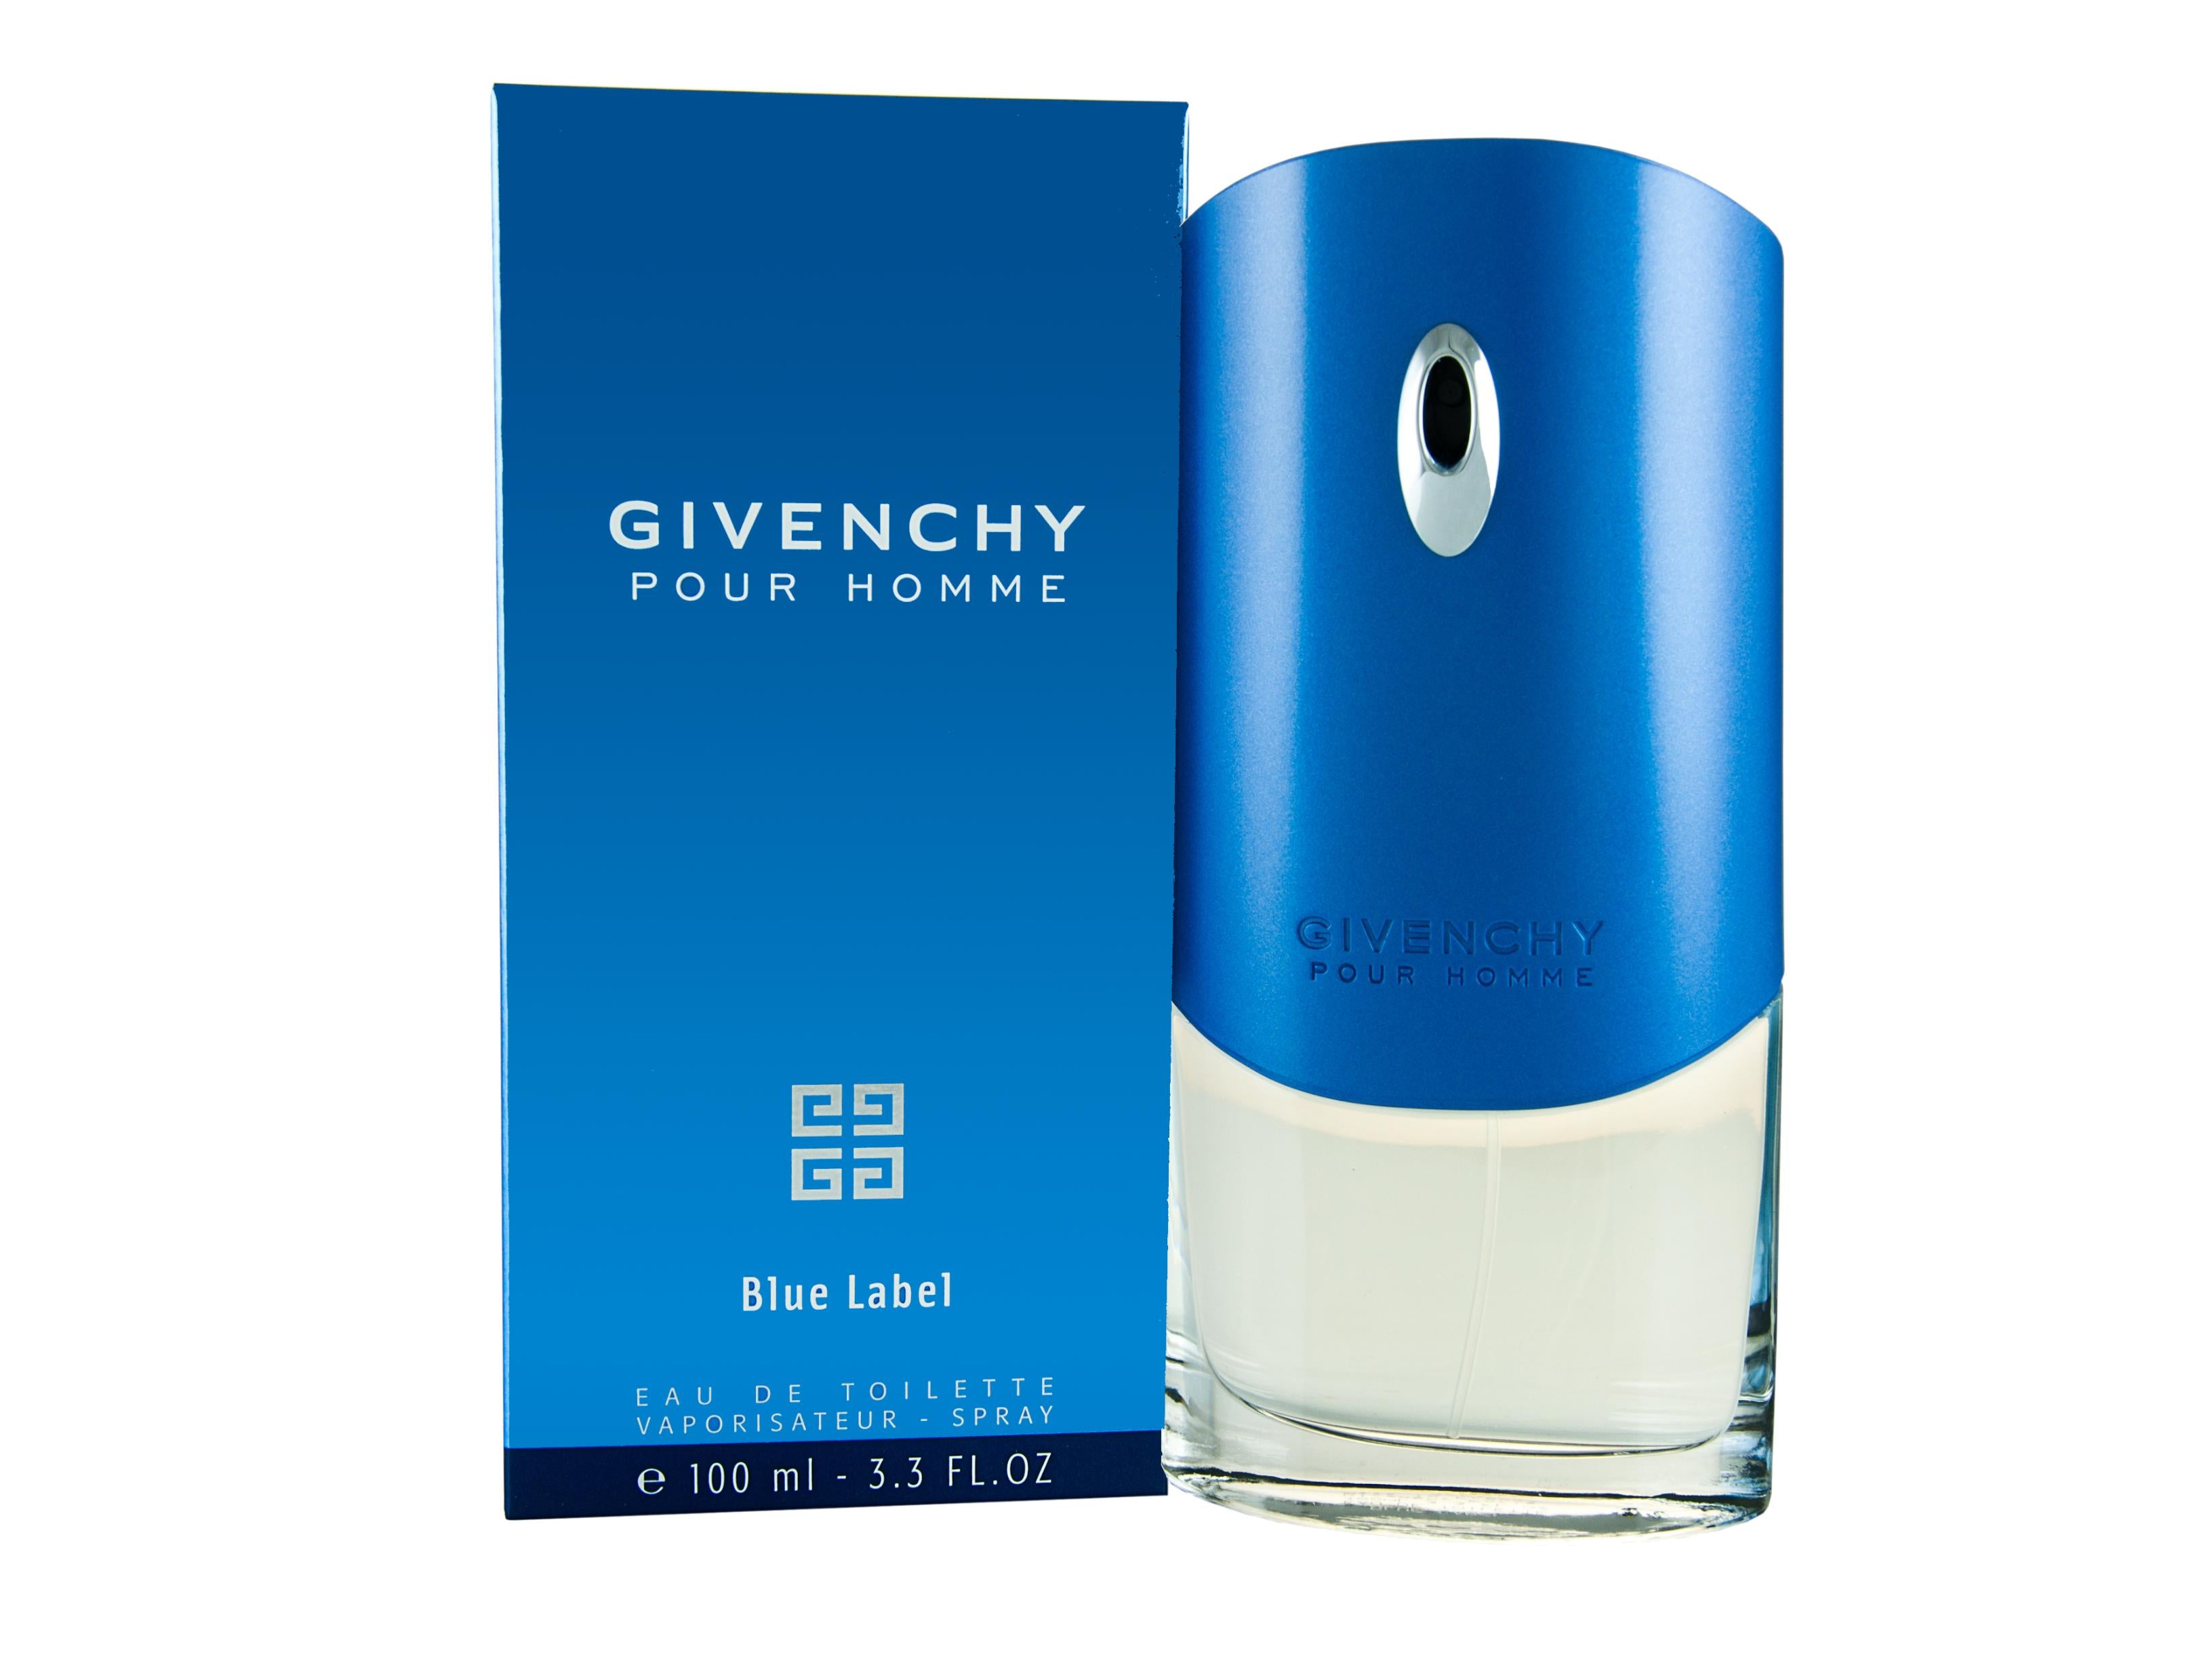 View Givenchy Homme Blue Label Eau De Toilette 100ml Spray information